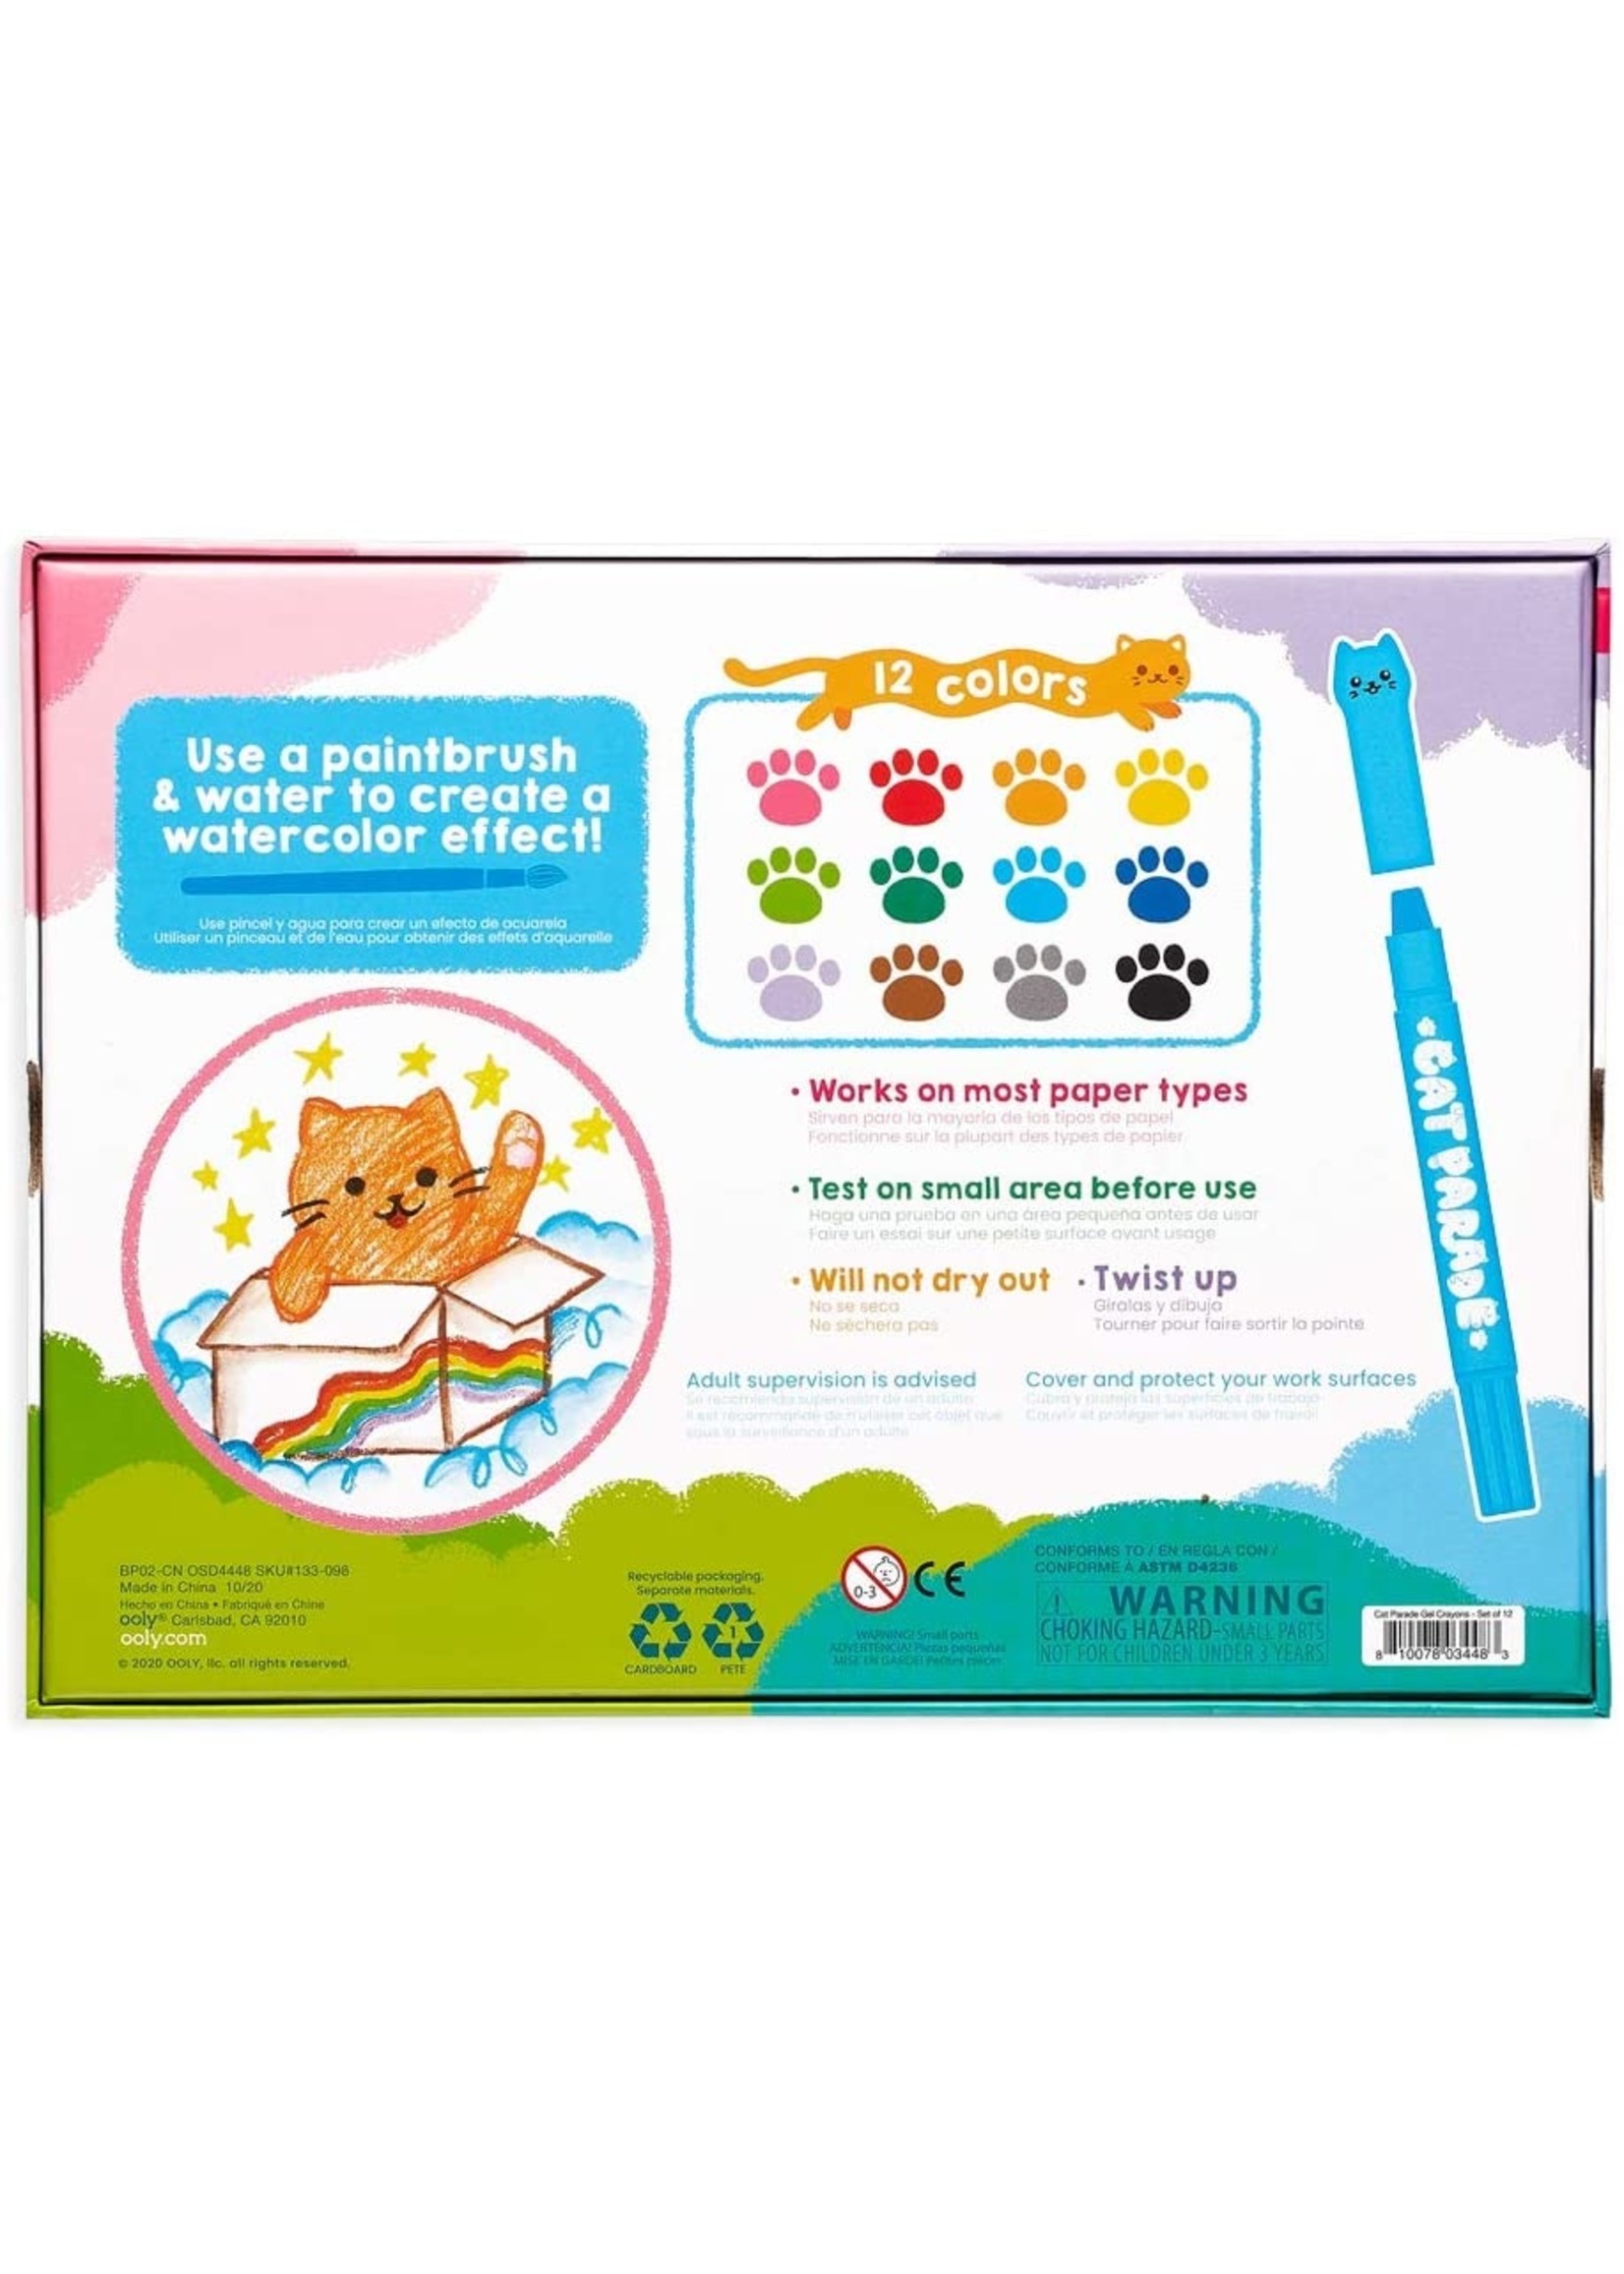 Ooly Cat Parade Gel Crayons - 12pk   /12